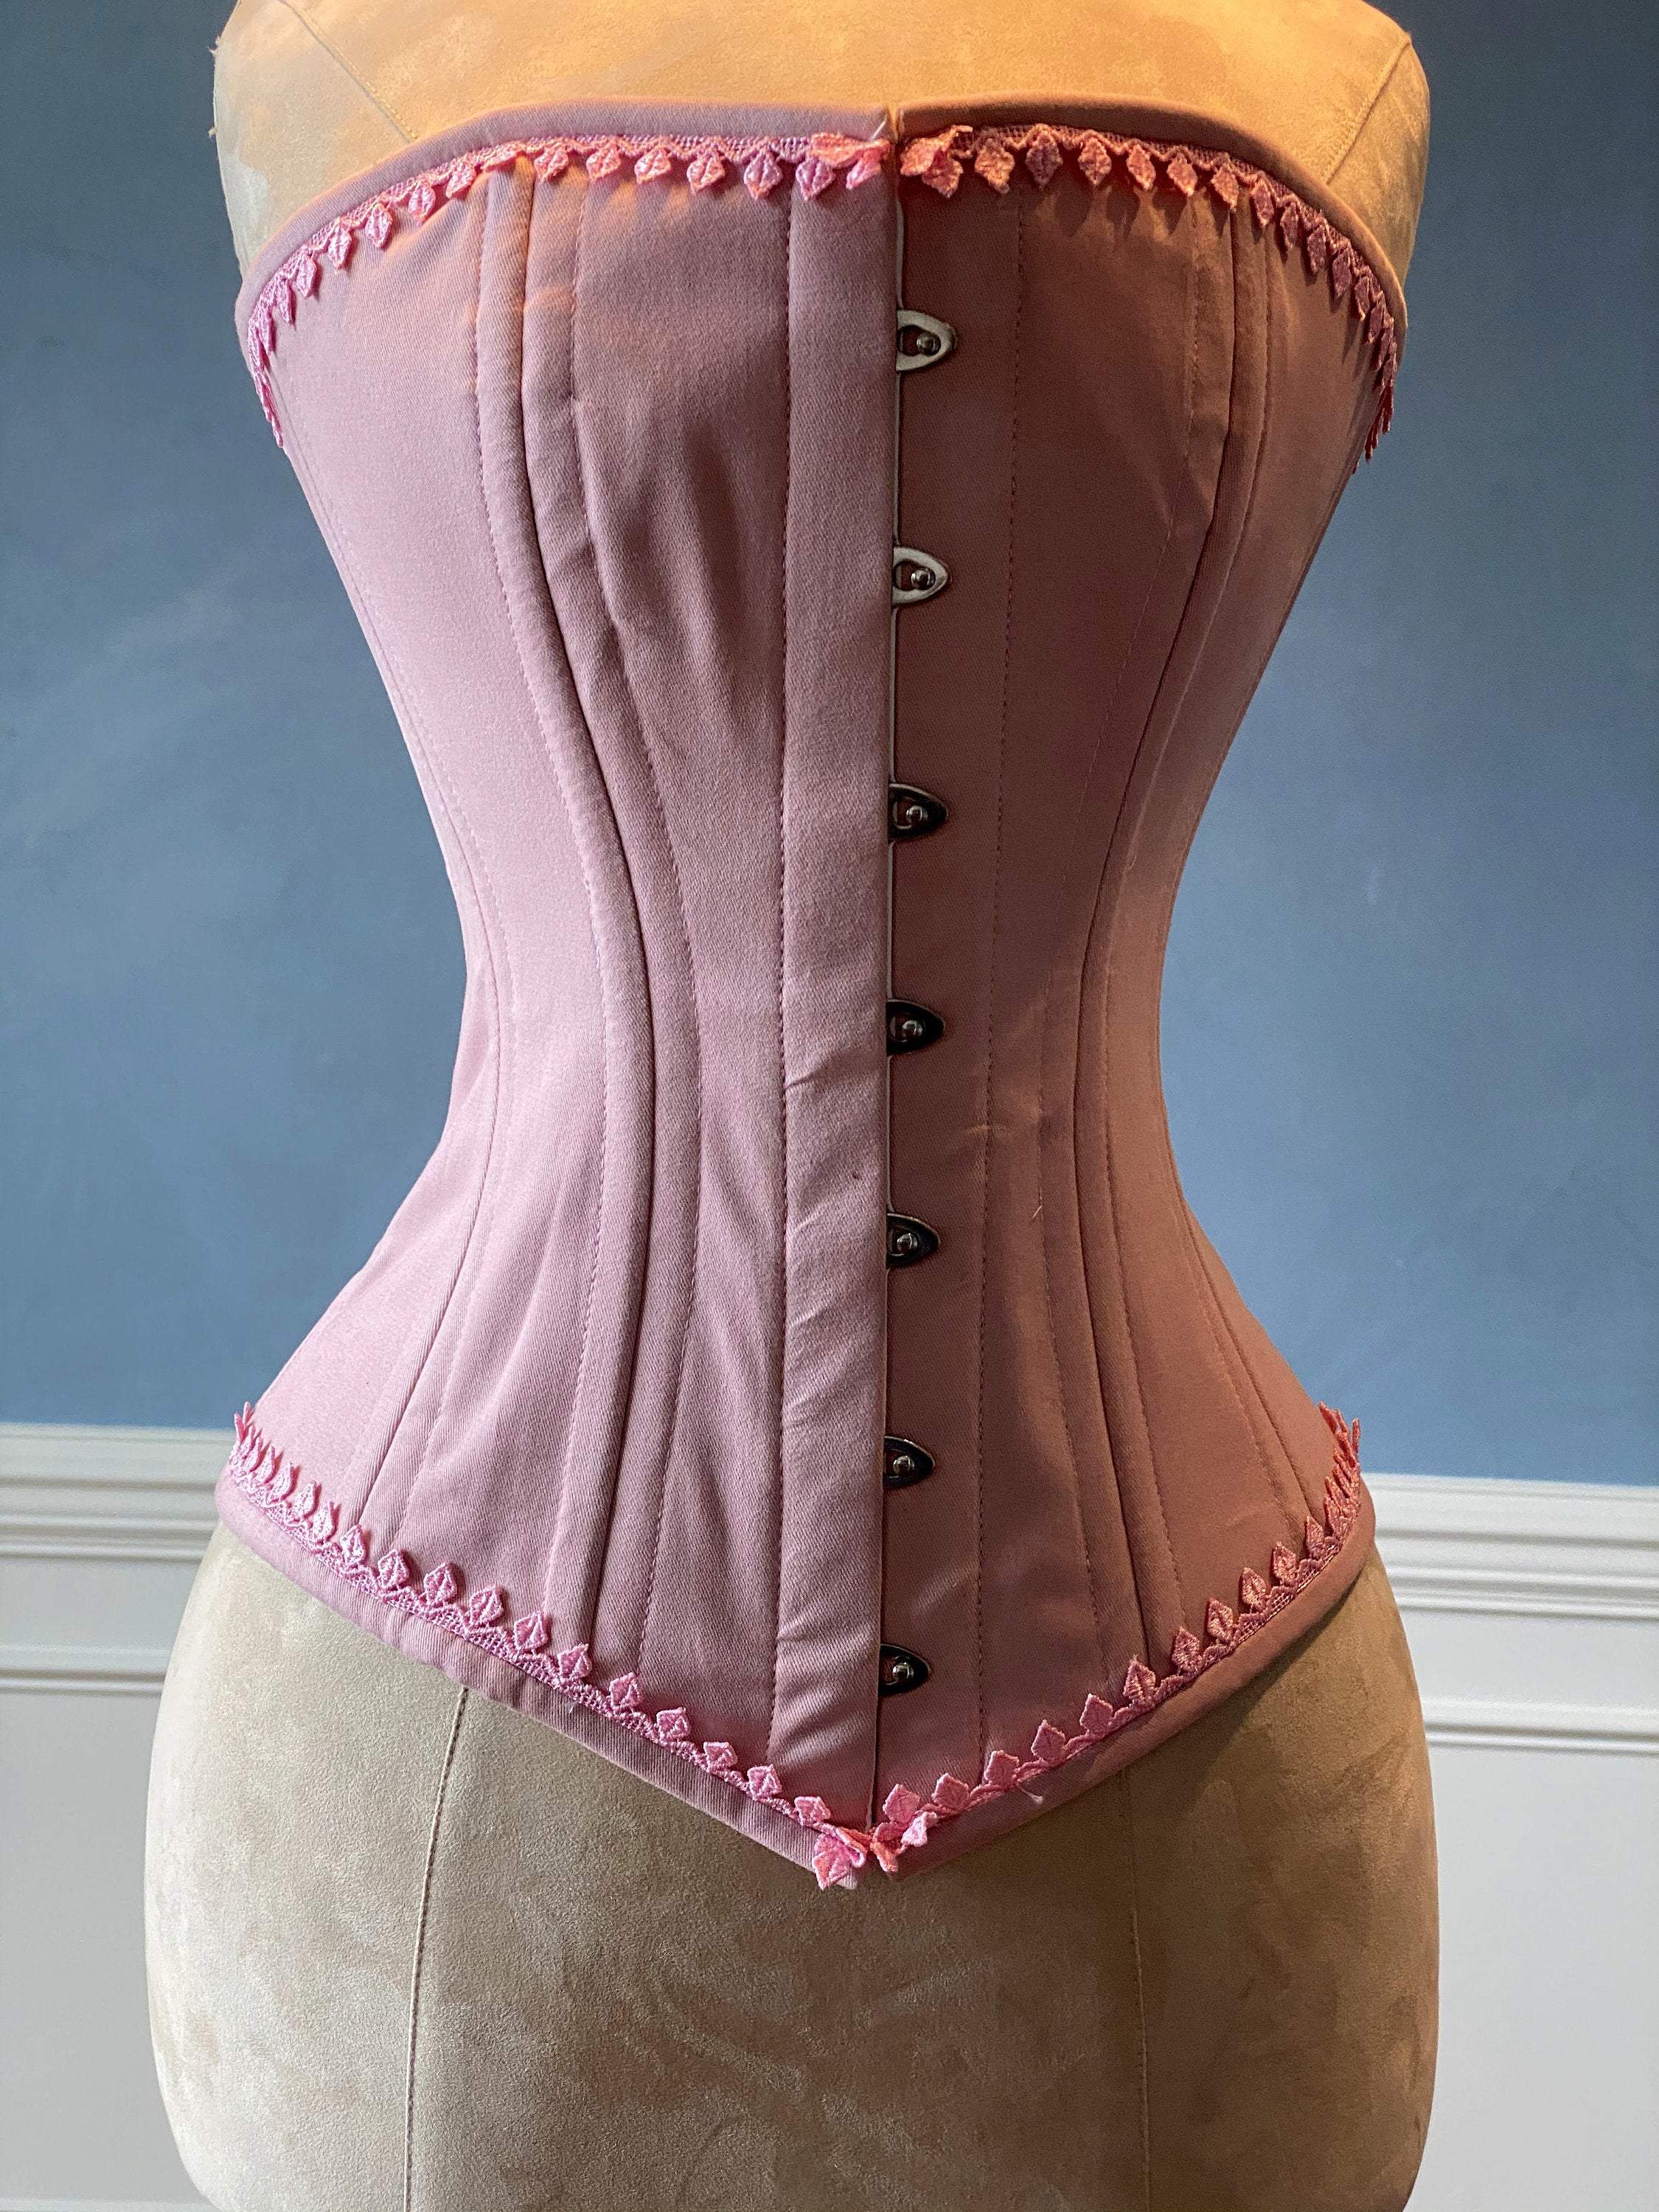 Authentic cotton corset: vintage pink cotton overbust corset – Corsettery  Authentic Corsets USA